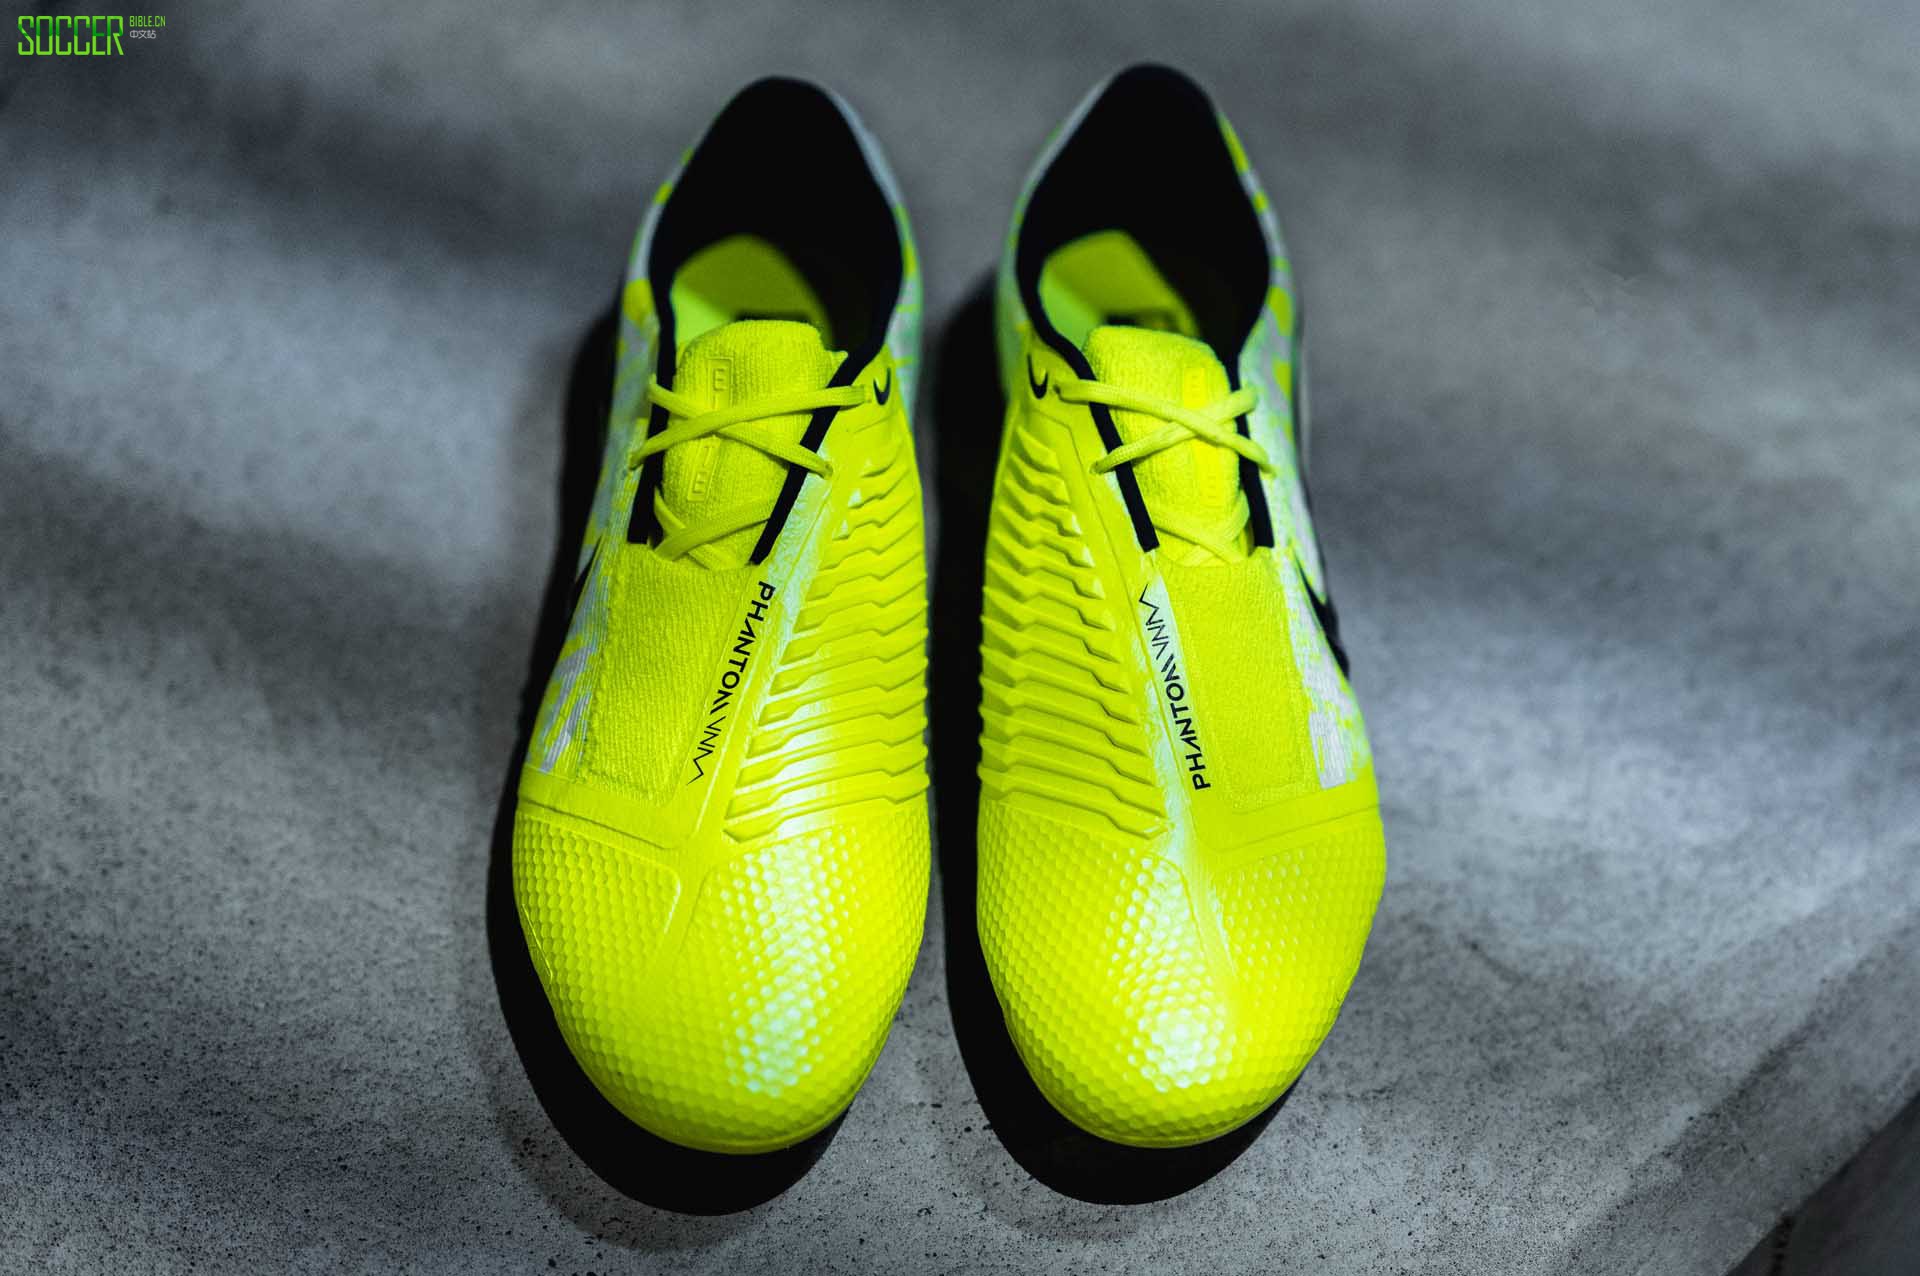 耐克推出PhantomVSN暗煞足球鞋“New Lights”版本 - Nike_耐克足球鞋 - SoccerBible中文站_足球鞋_PDS情报站